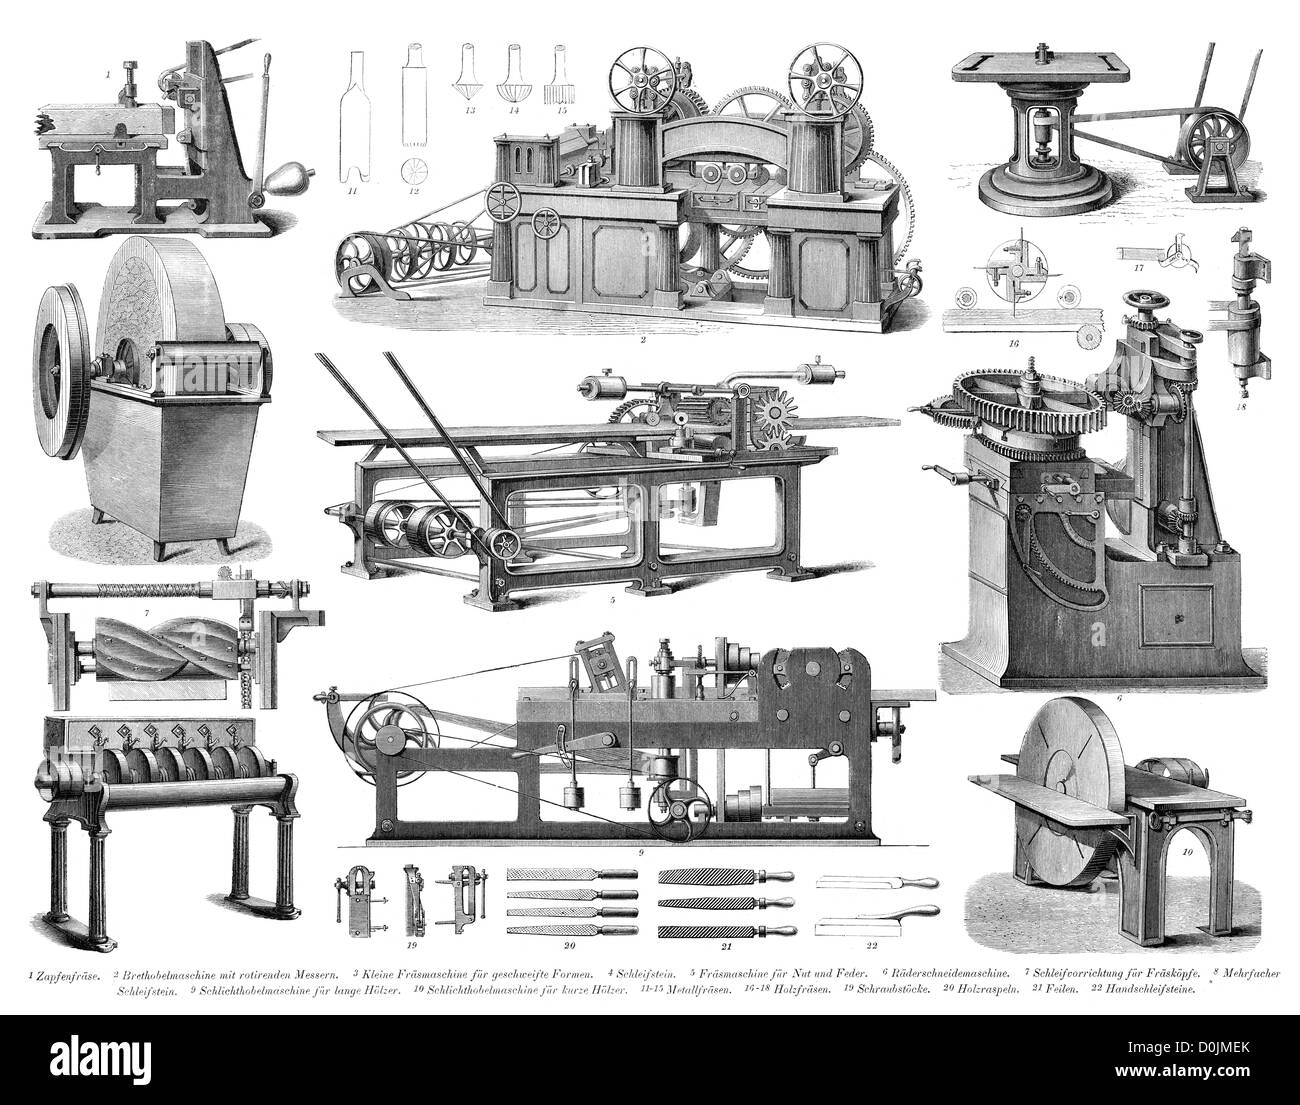 Colección de máquinas desde la revolución industrial, incluyendo múltiples  Whetstone, planos de madera y fresadoras Fotografía de stock - Alamy